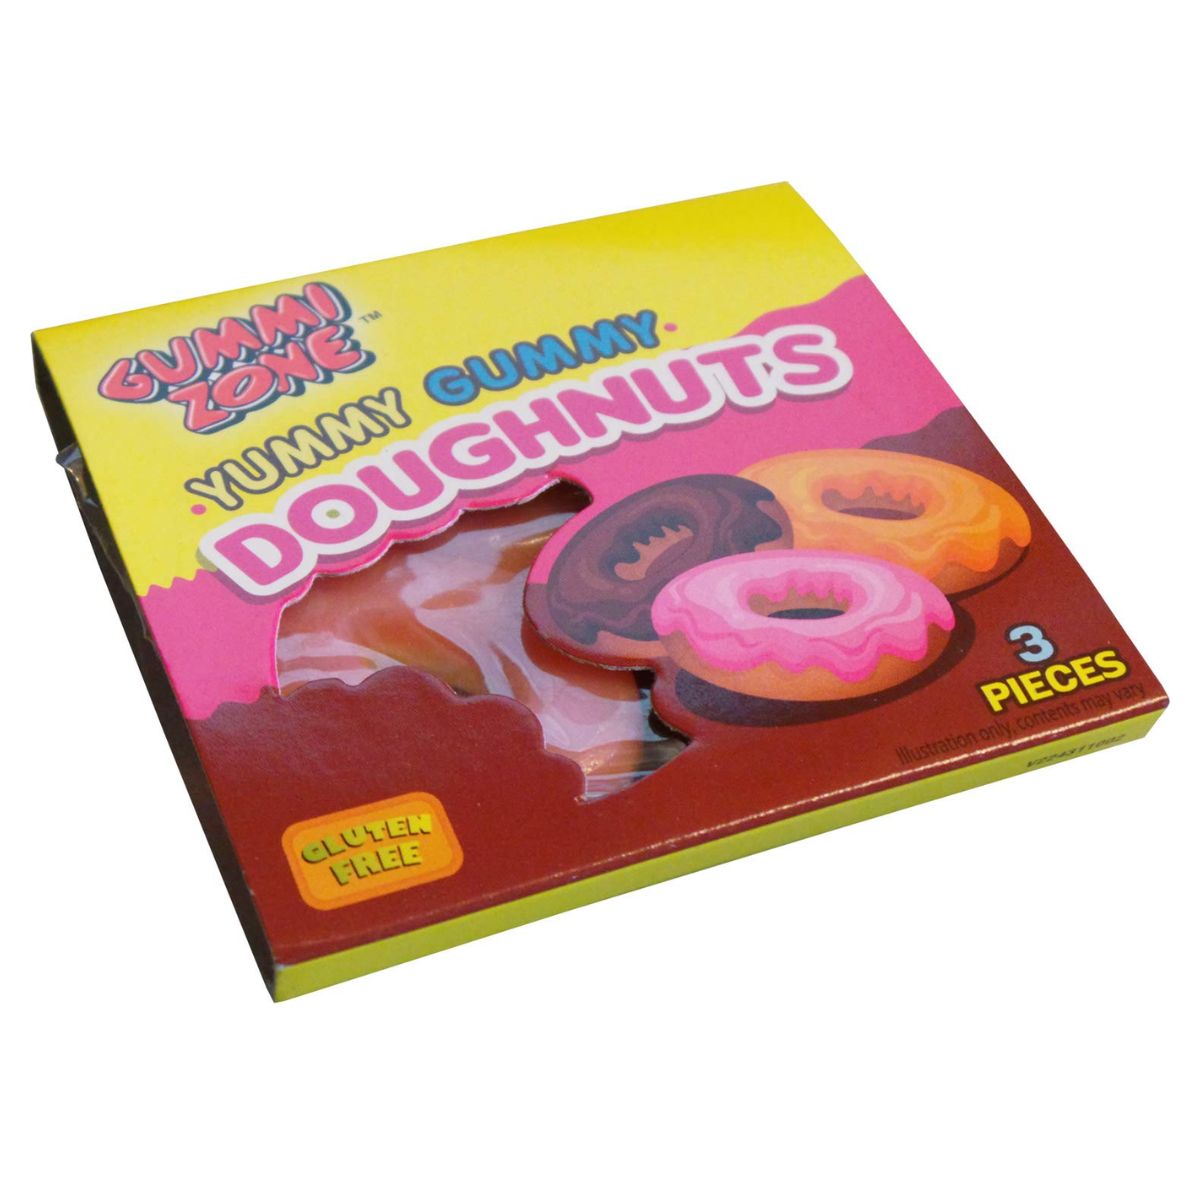 A box of Gummi Zone - Yummy Gummy Doughnuts - 21g in a box.